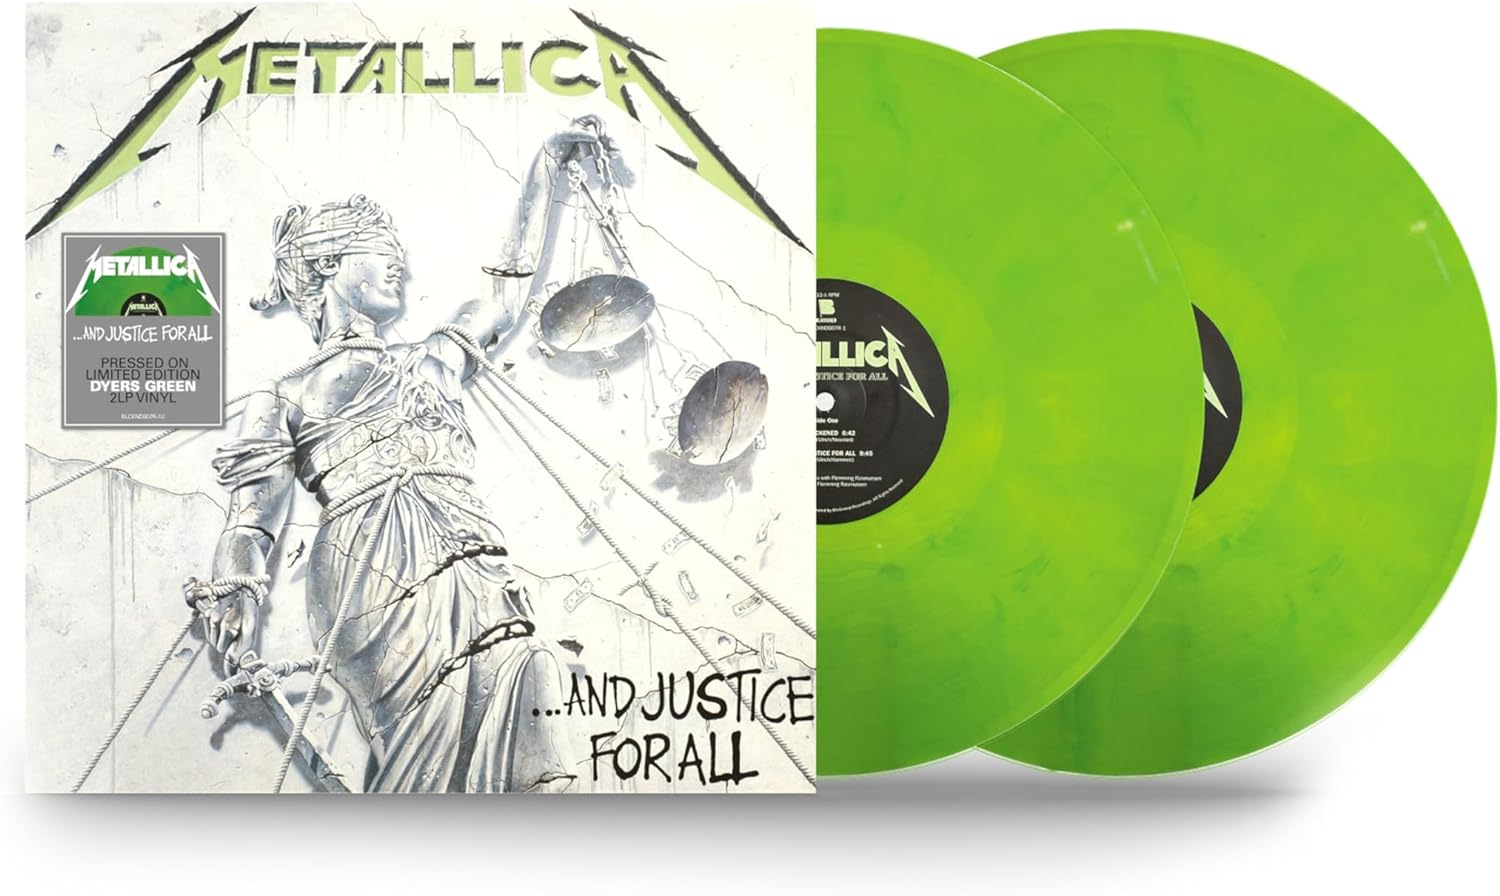 Metallica Vinyl Set All 6 Walmart Exclusives - Vinyl